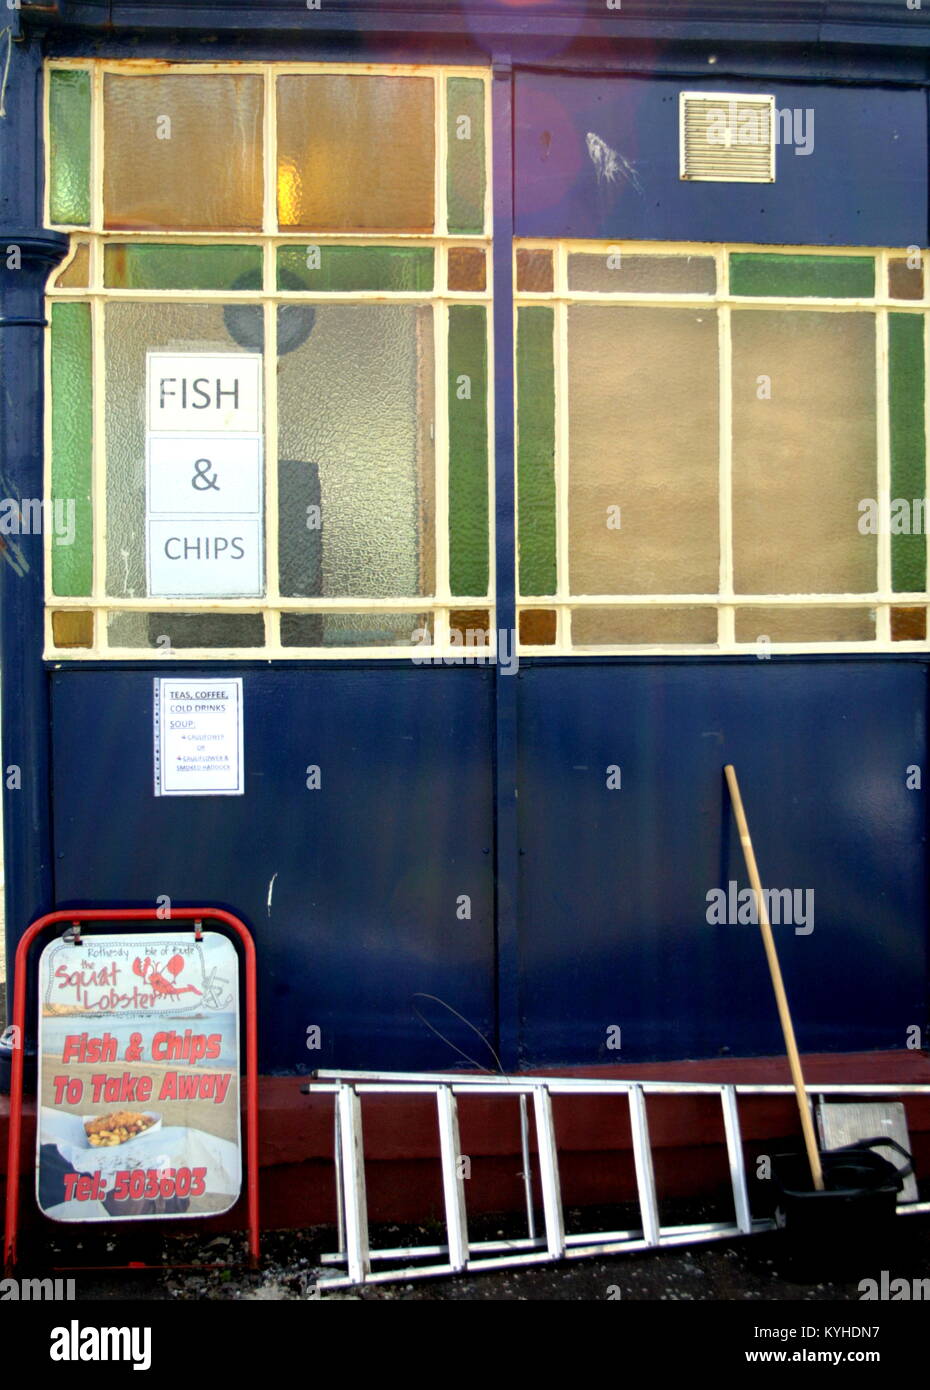 El squat lobster elogiado por The Sunday Times, al lado del mar fish and chips ventana restaurante signo Rothesay, Reino Unido Foto de stock